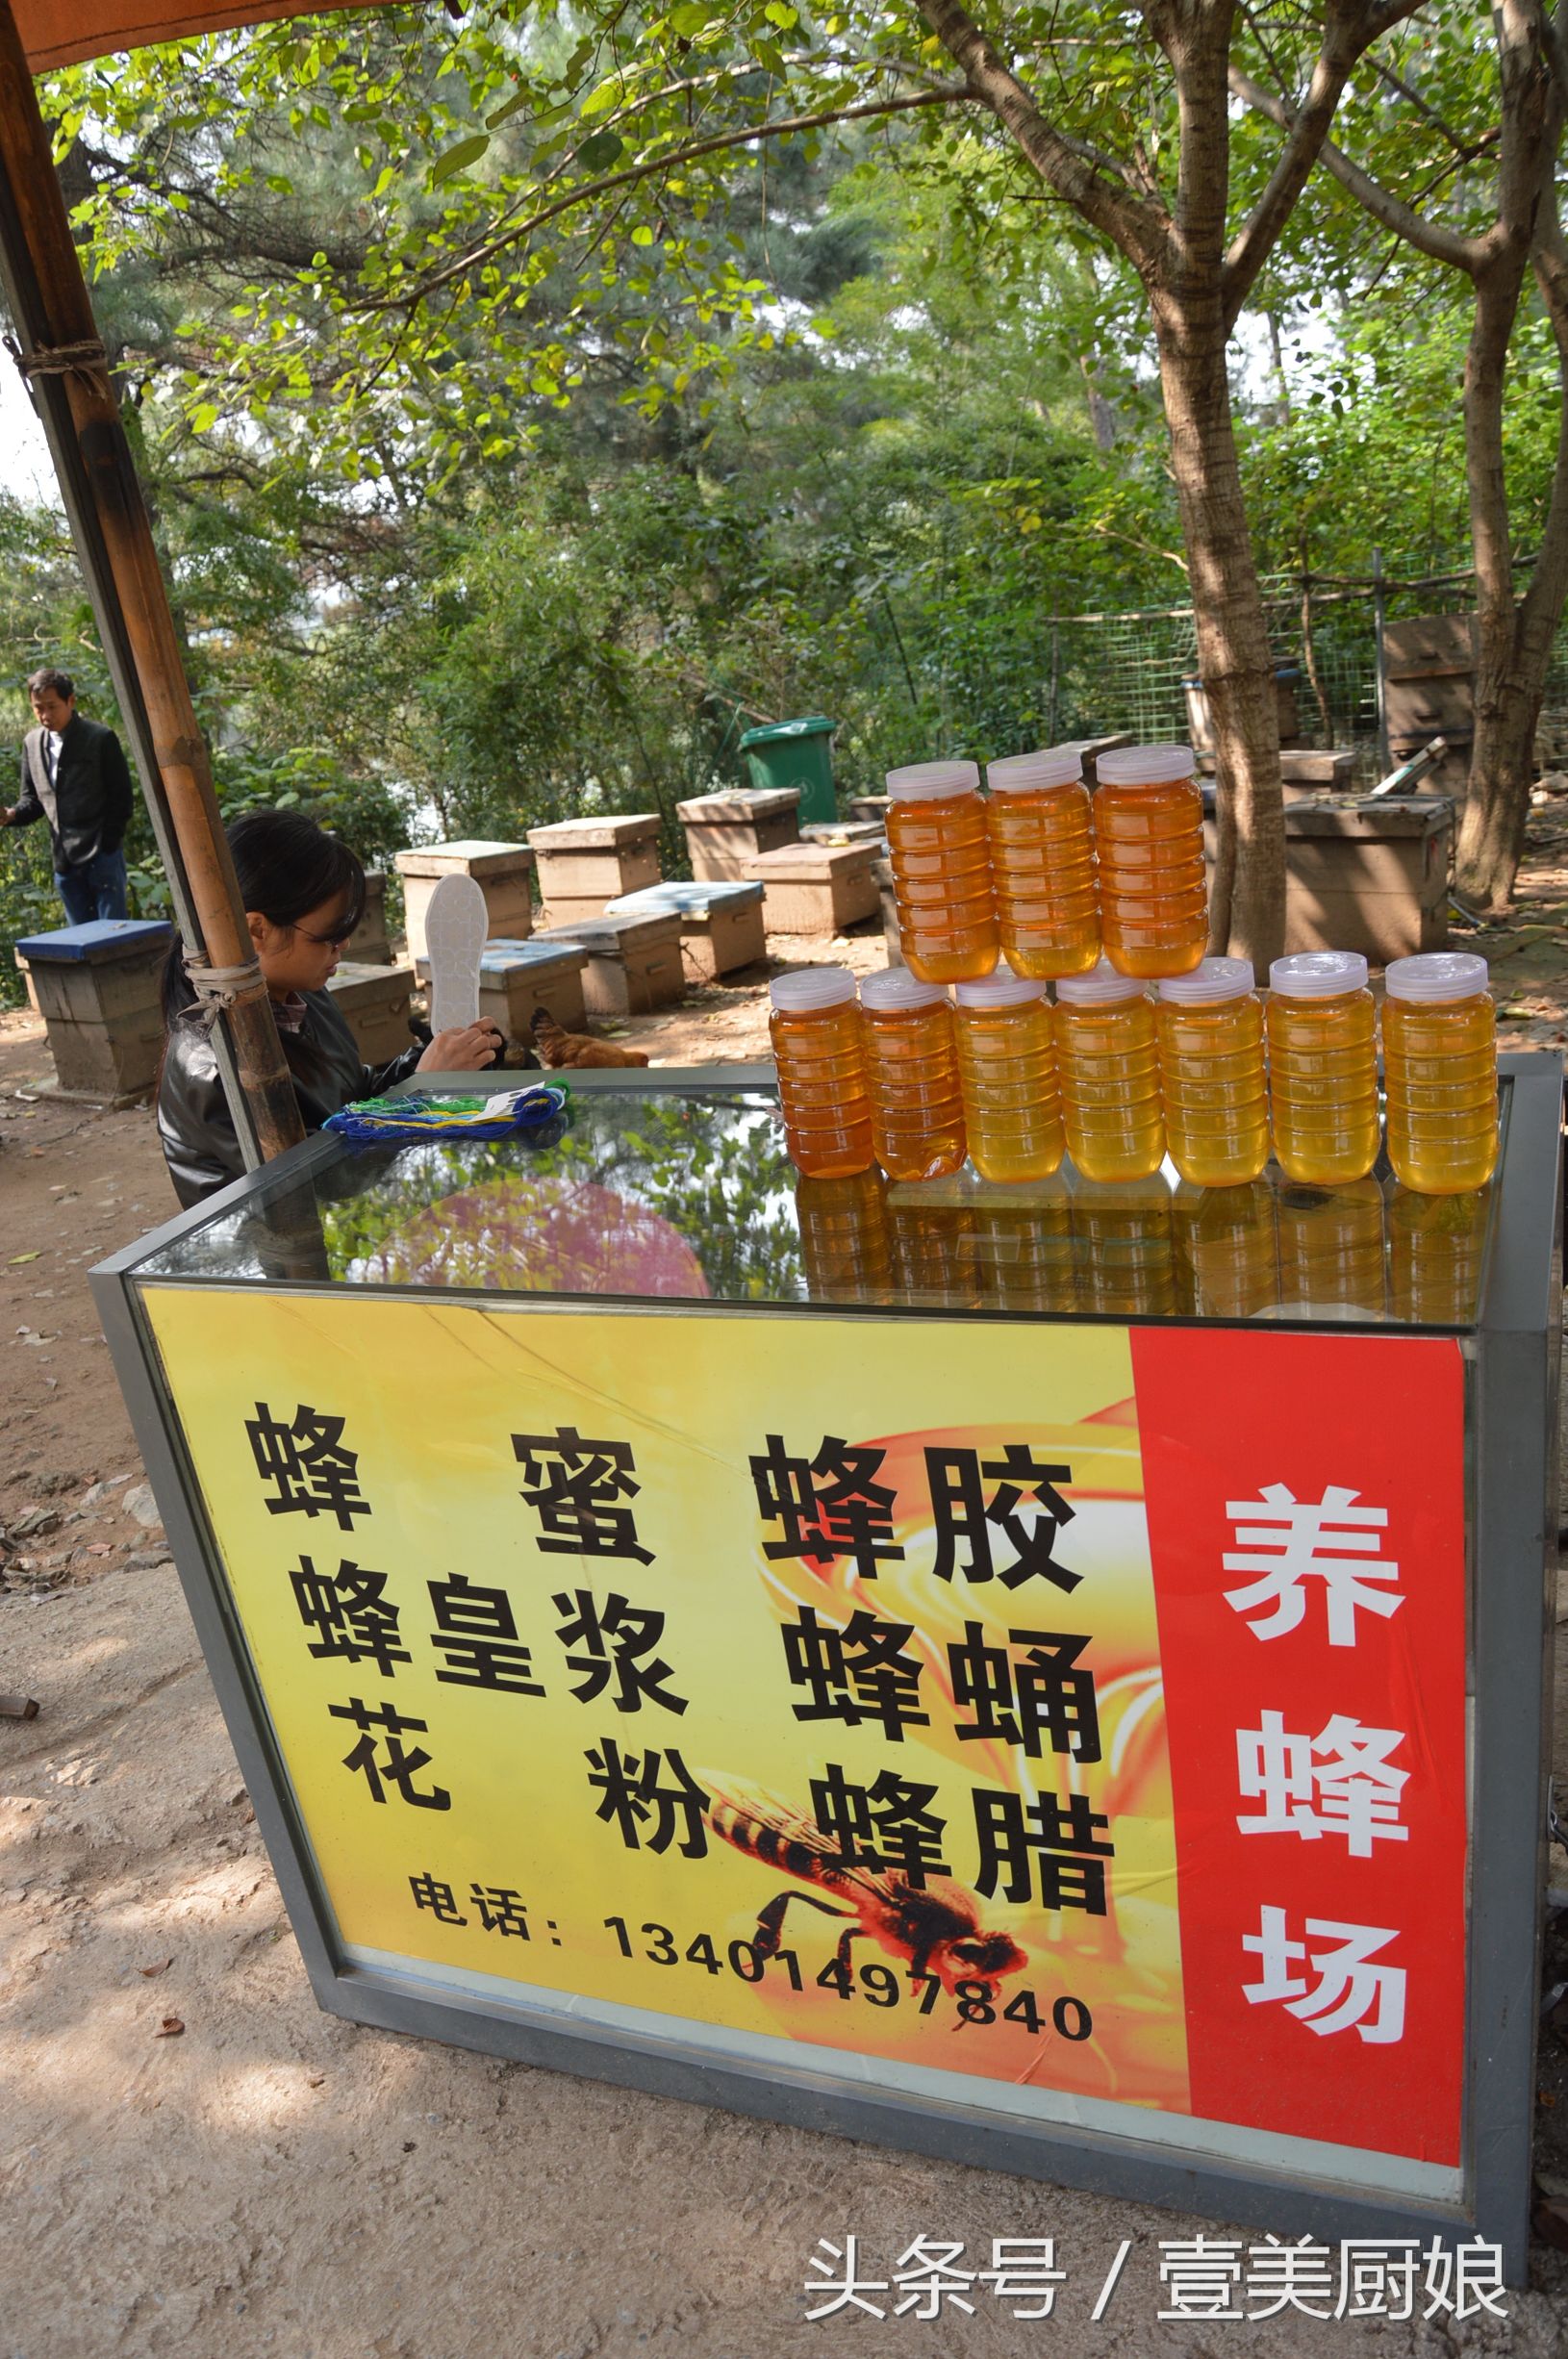 这家卖的蜂蜜蜂胶等蜜蜂产品,看的人多买的少土鸡就在林地里走动